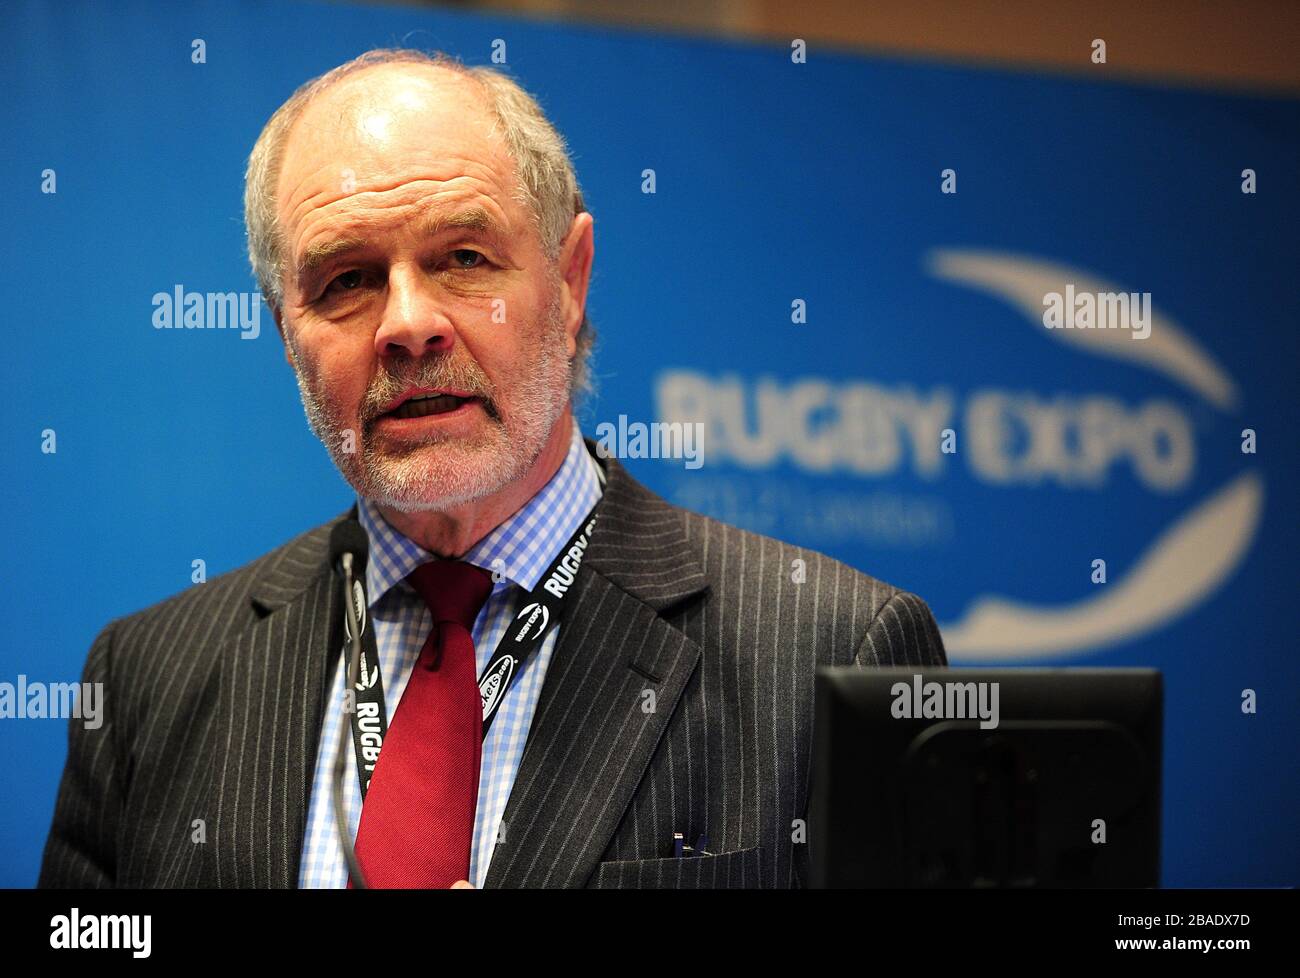 John Taylor, commentateur de rugby à talkSPORT, parle pendant le deuxième jour de l'exposition de rugby 2012 Banque D'Images